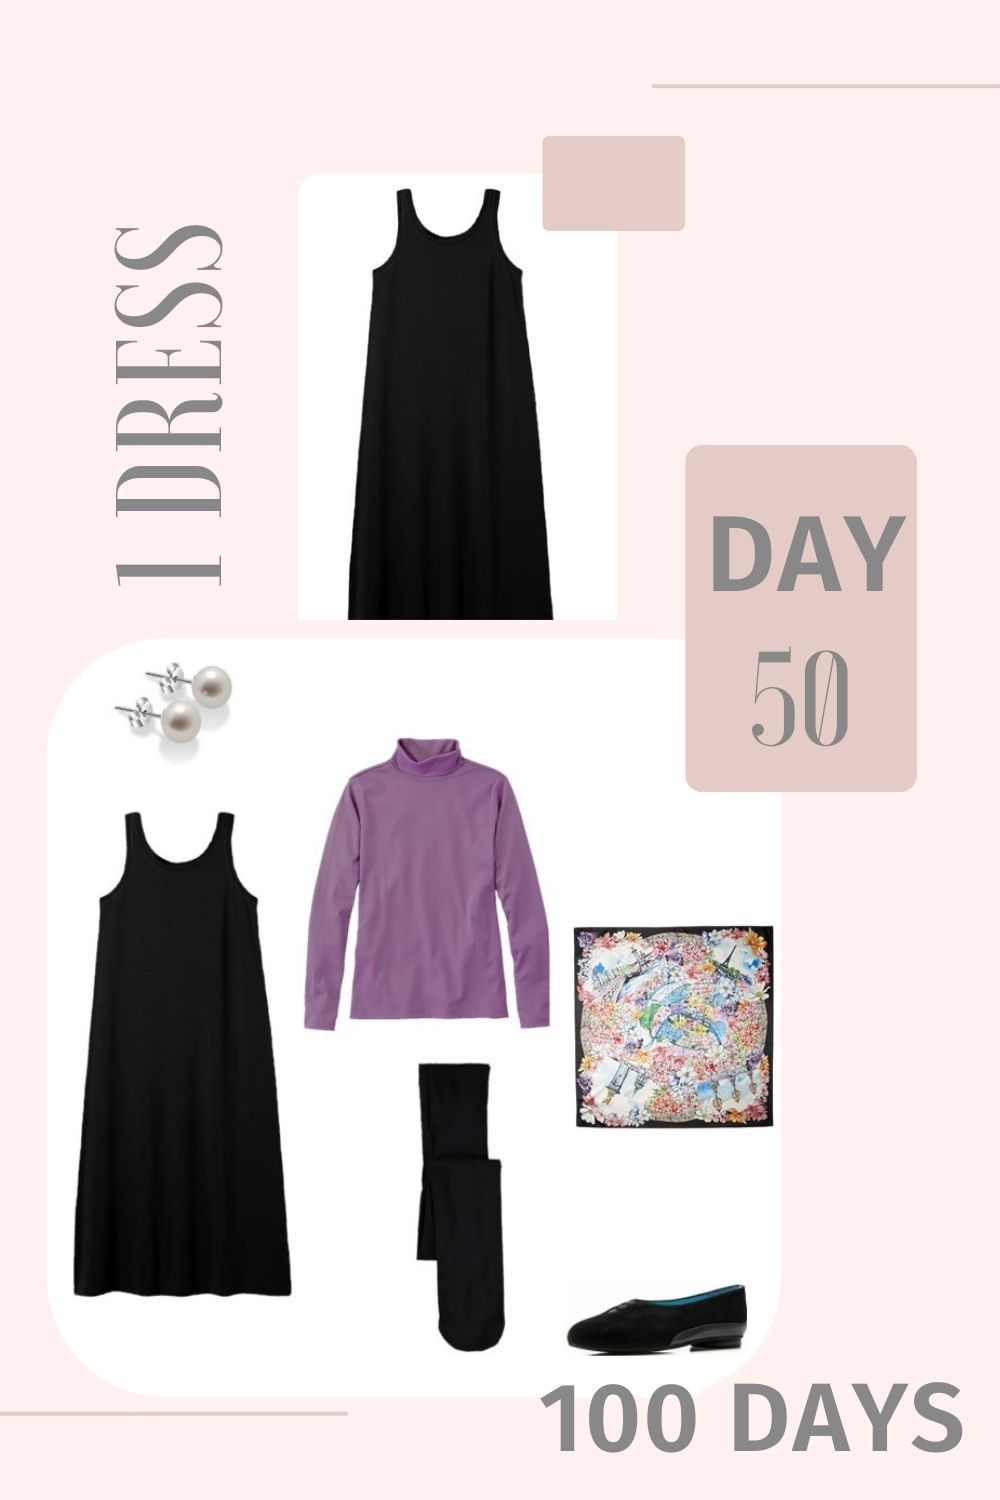 1 Dress 100 Days - Day 50